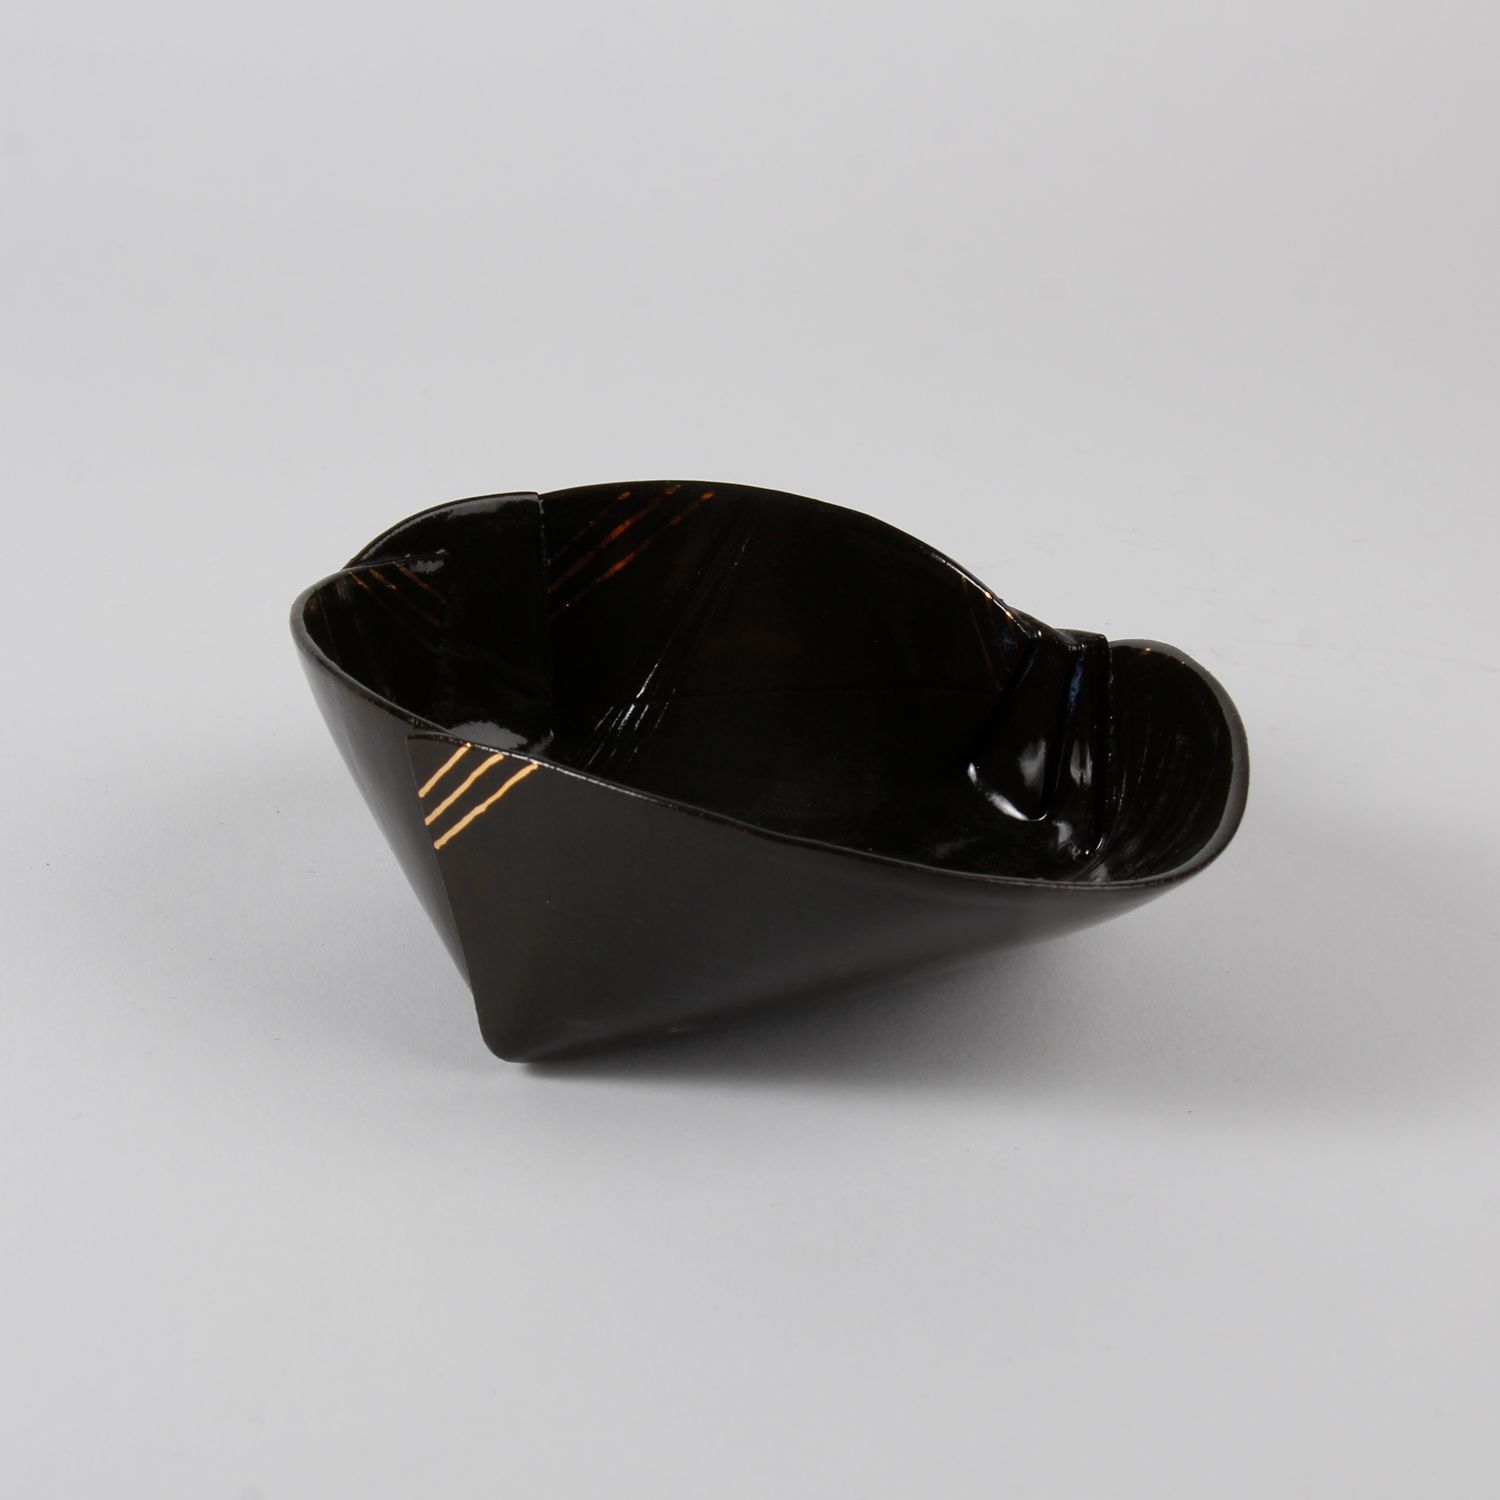 Natalie Waddell: XX Large Black Folded Bowl Product Image 4 of 4